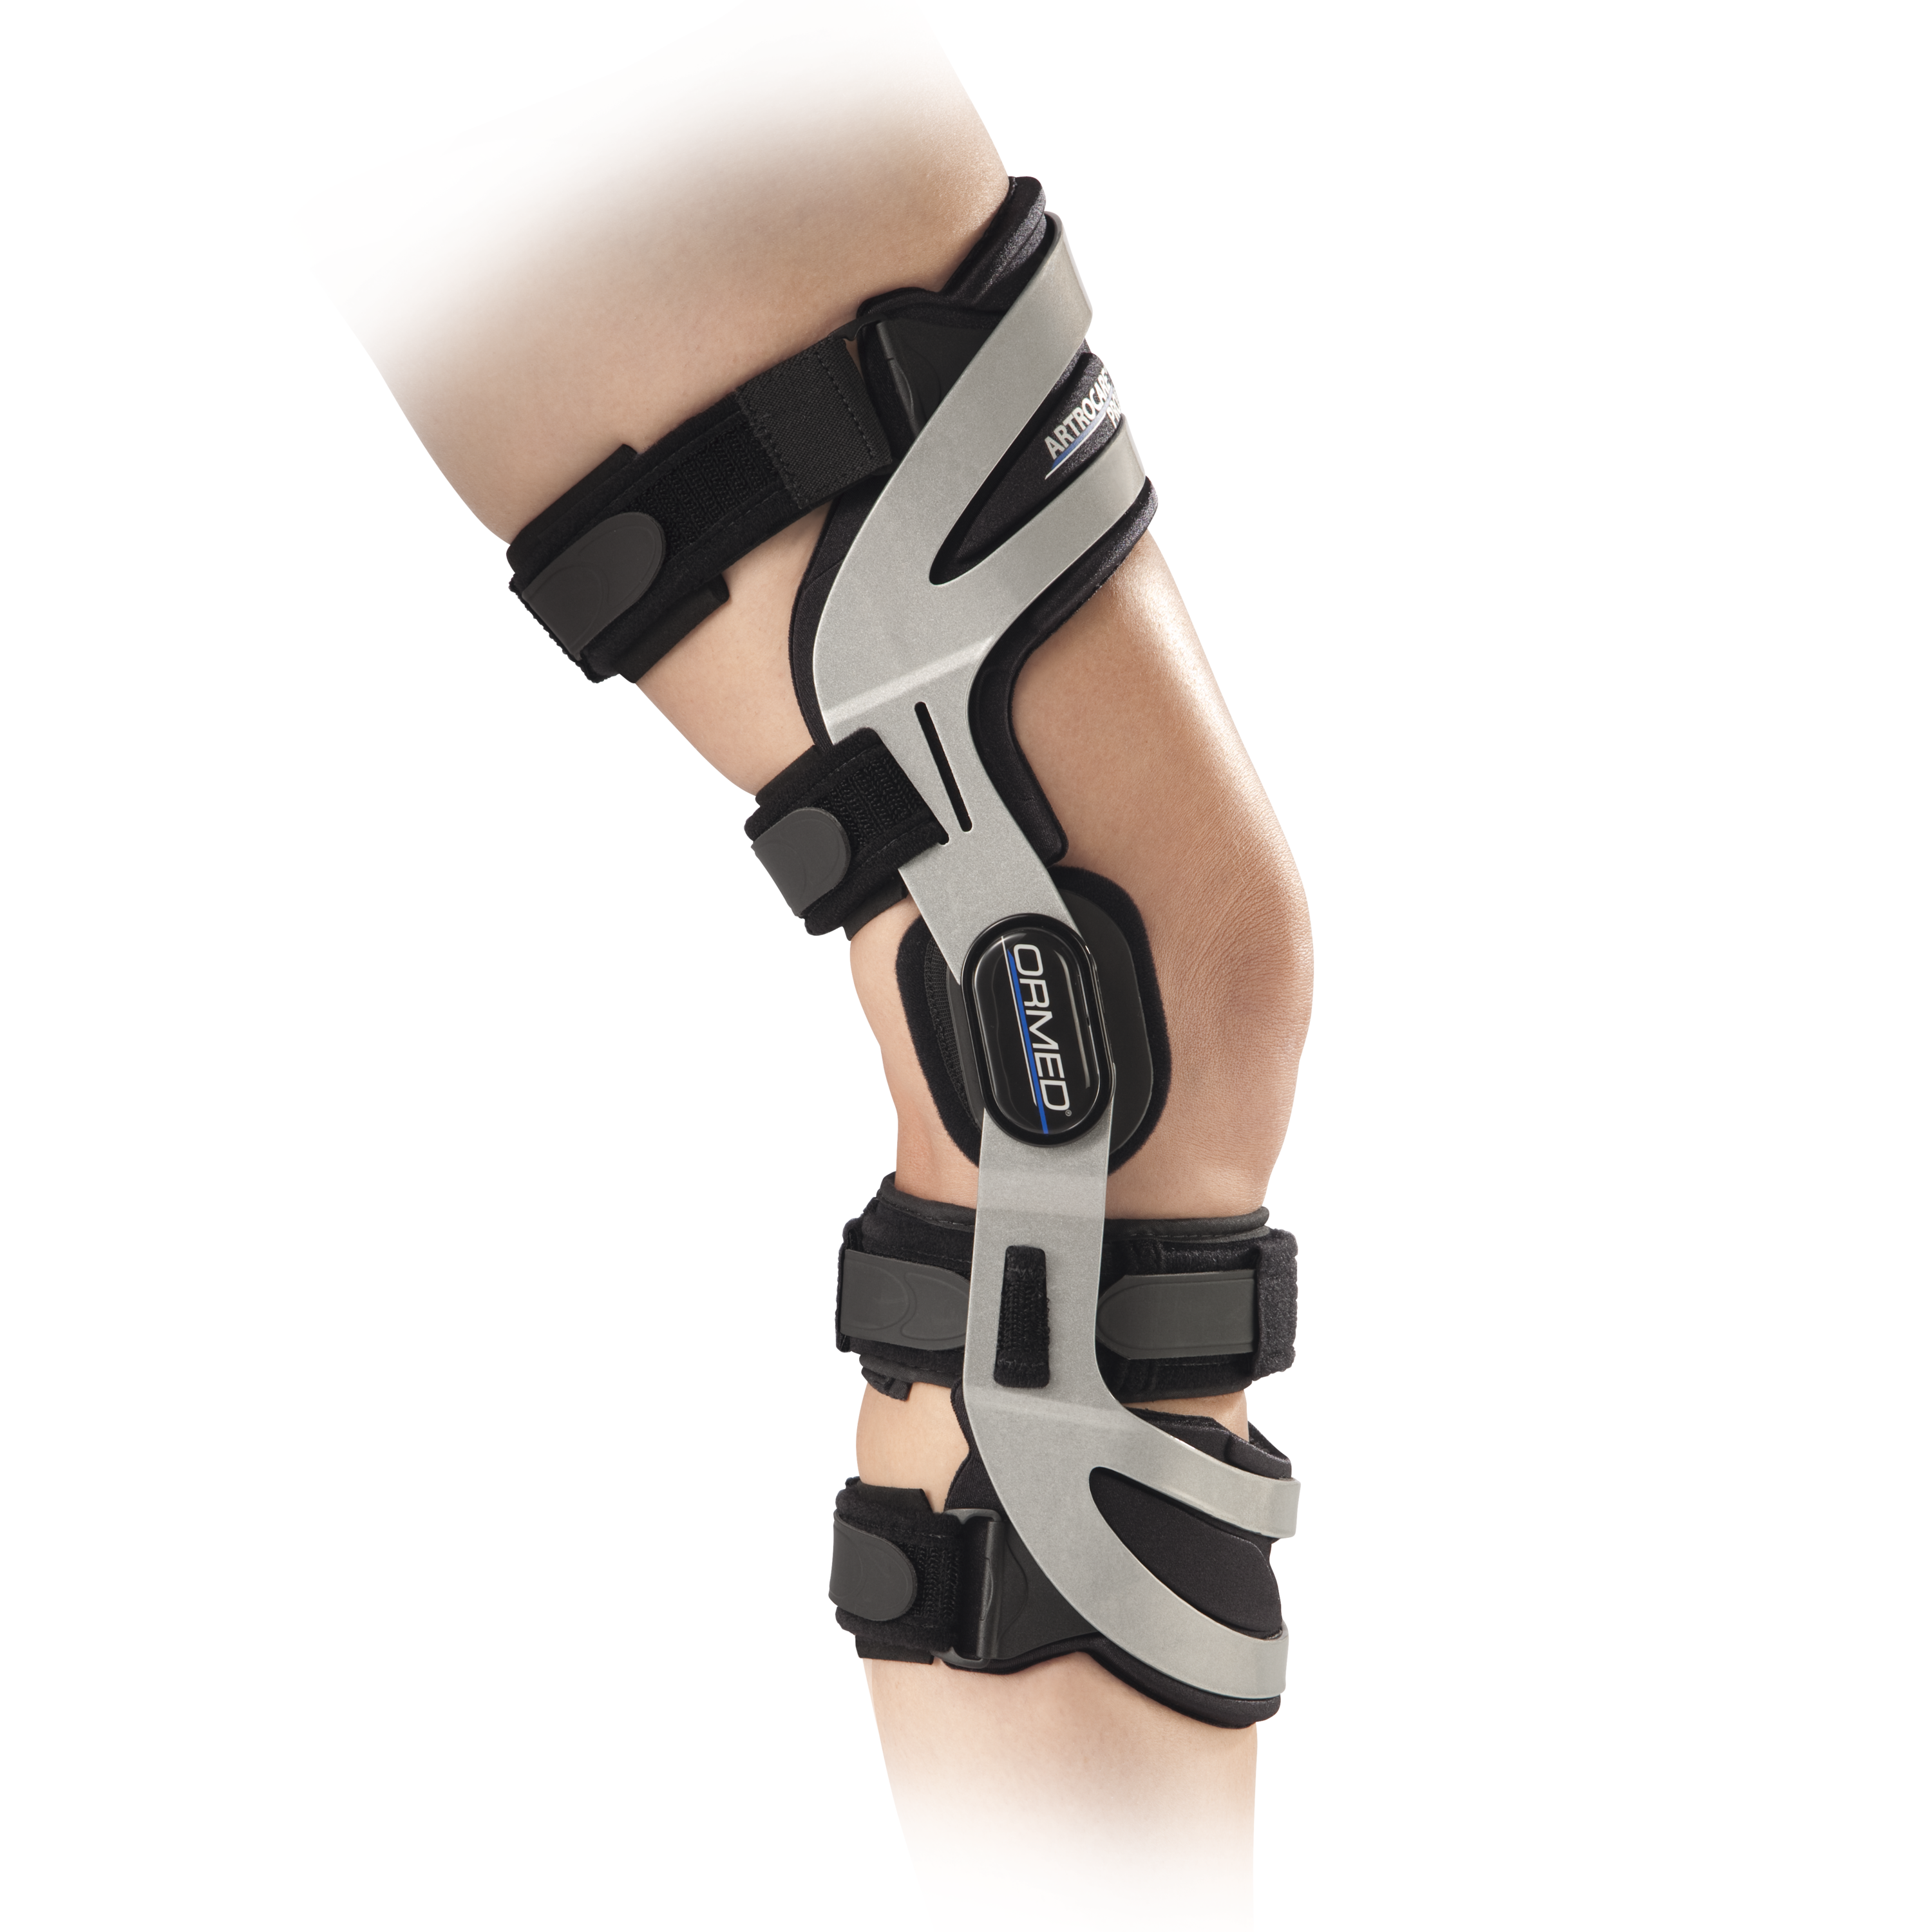 Zusatzbild ORMED® Artrocare® Pro3, seitliche Ansicht Ventrale Rahmenorthese zur Führung und Stabilisierung des Kniegelenks mit Extensions-/Flexionsbegrenzung